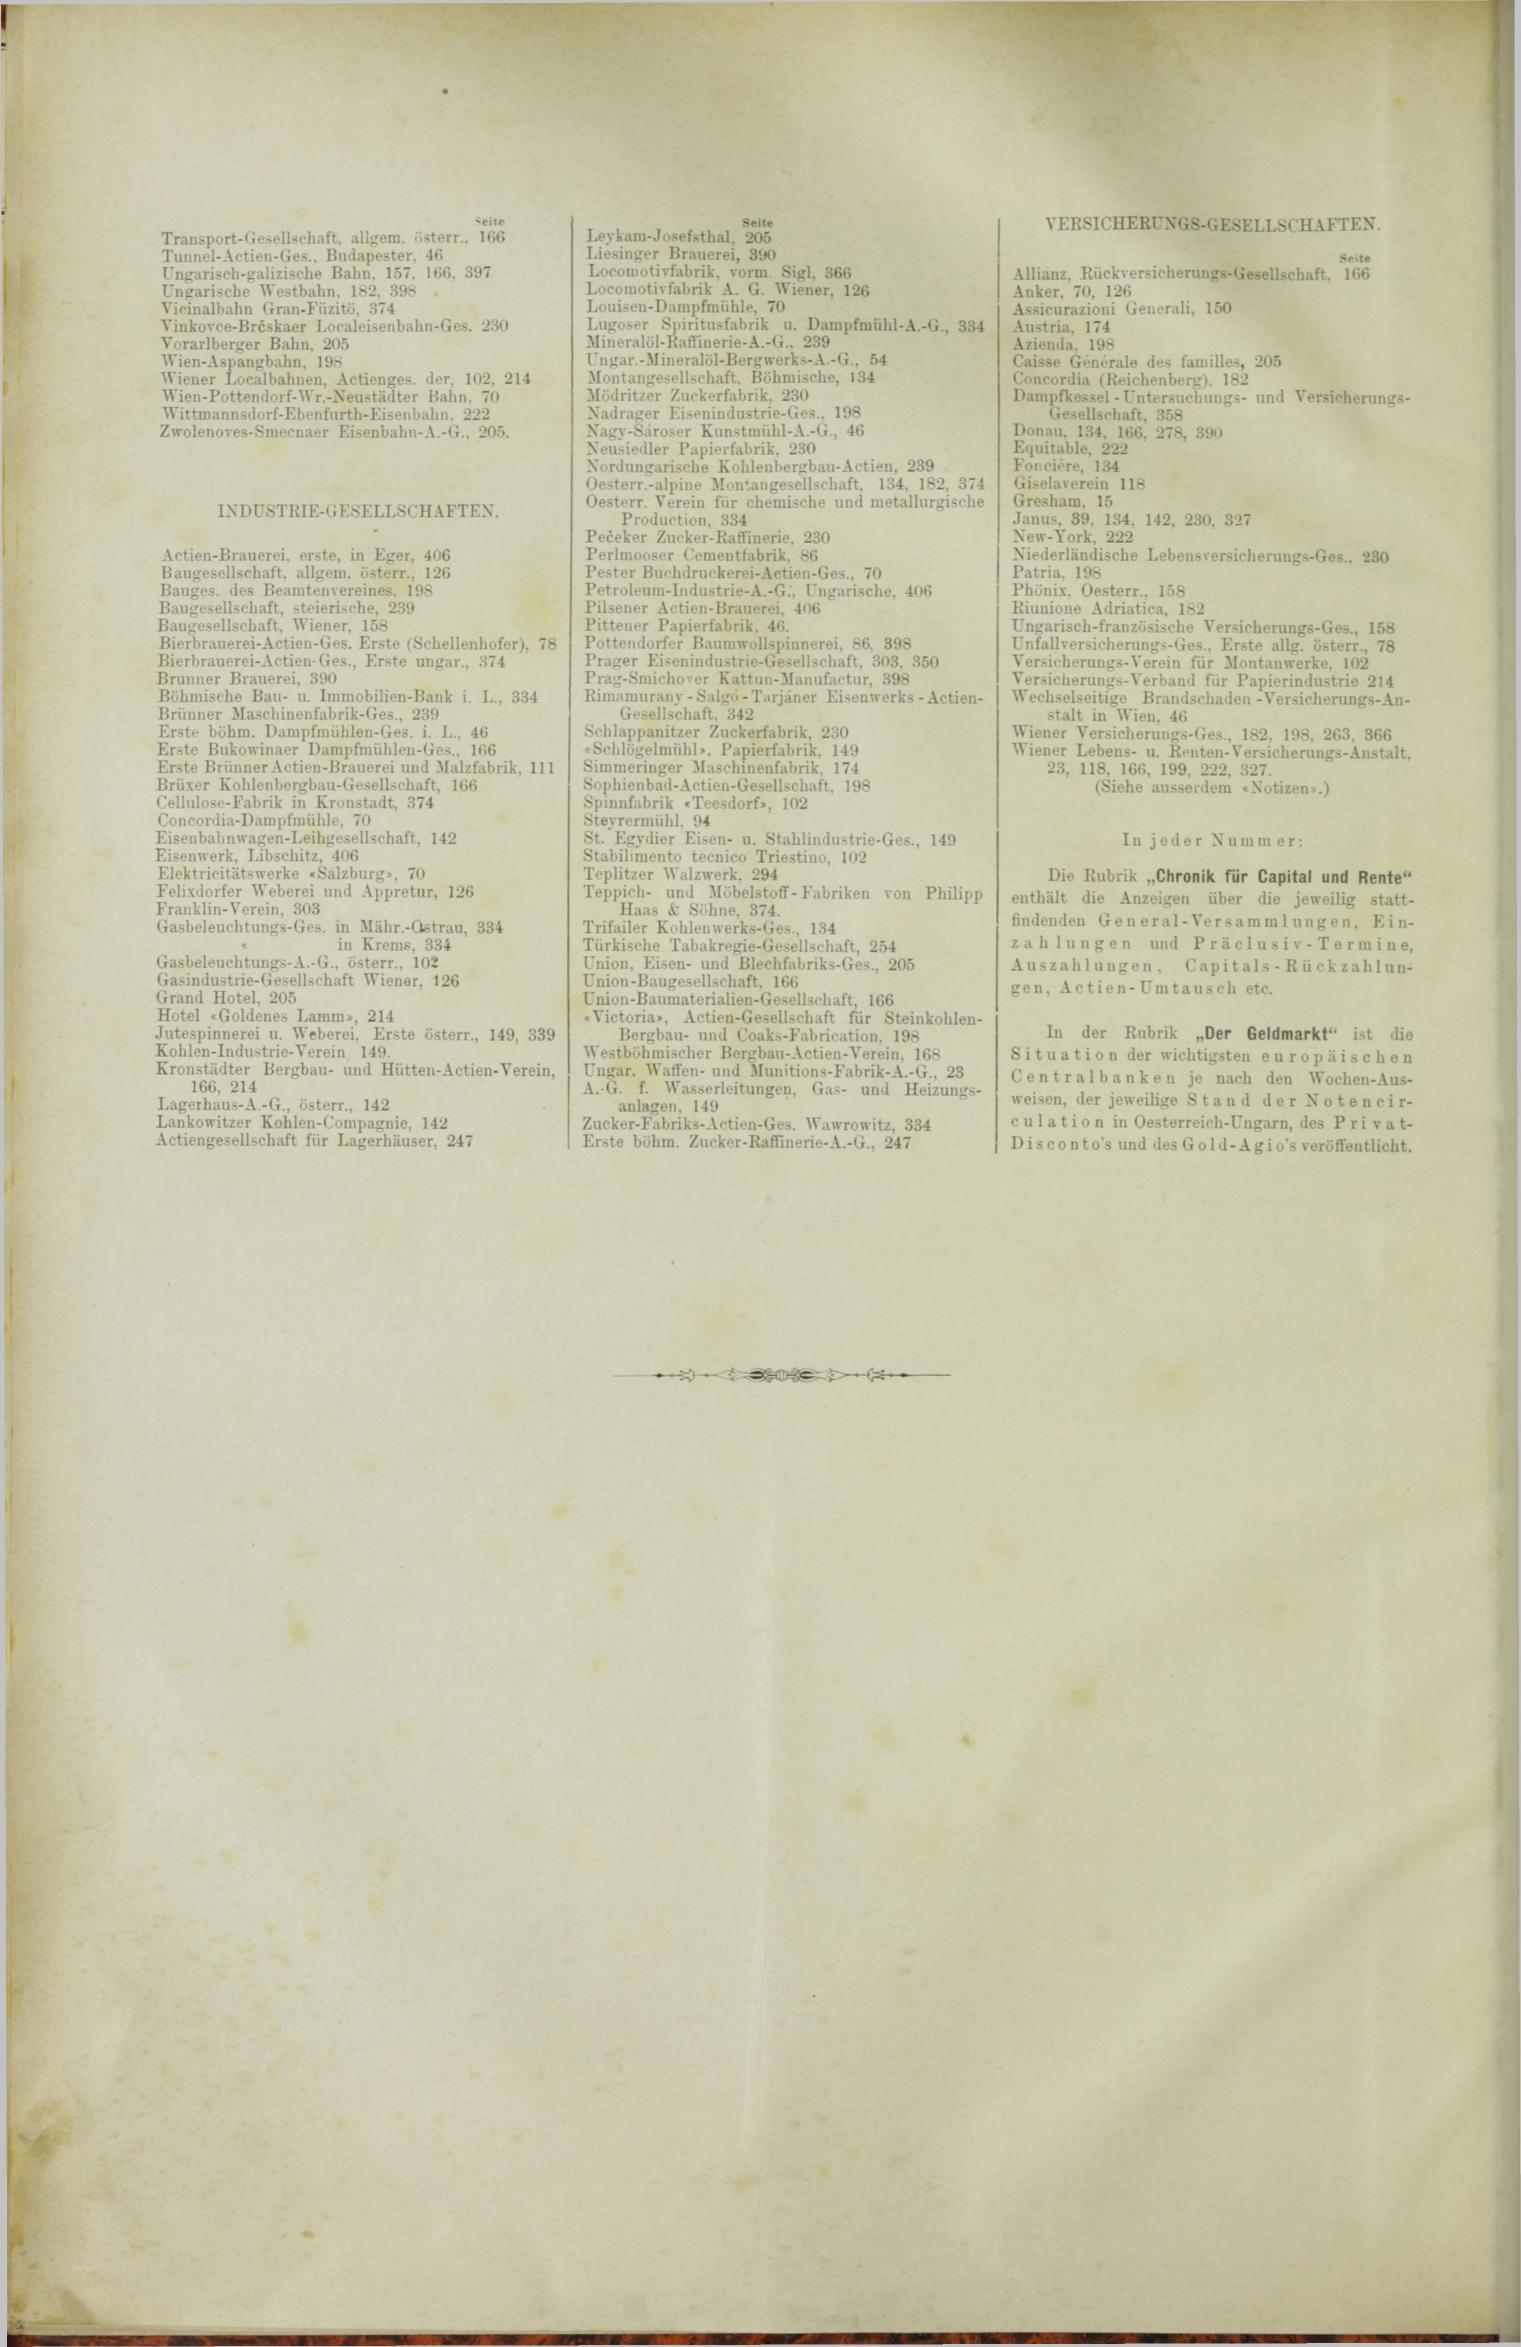 Der Tresor 30.08.1888 - Seite 12